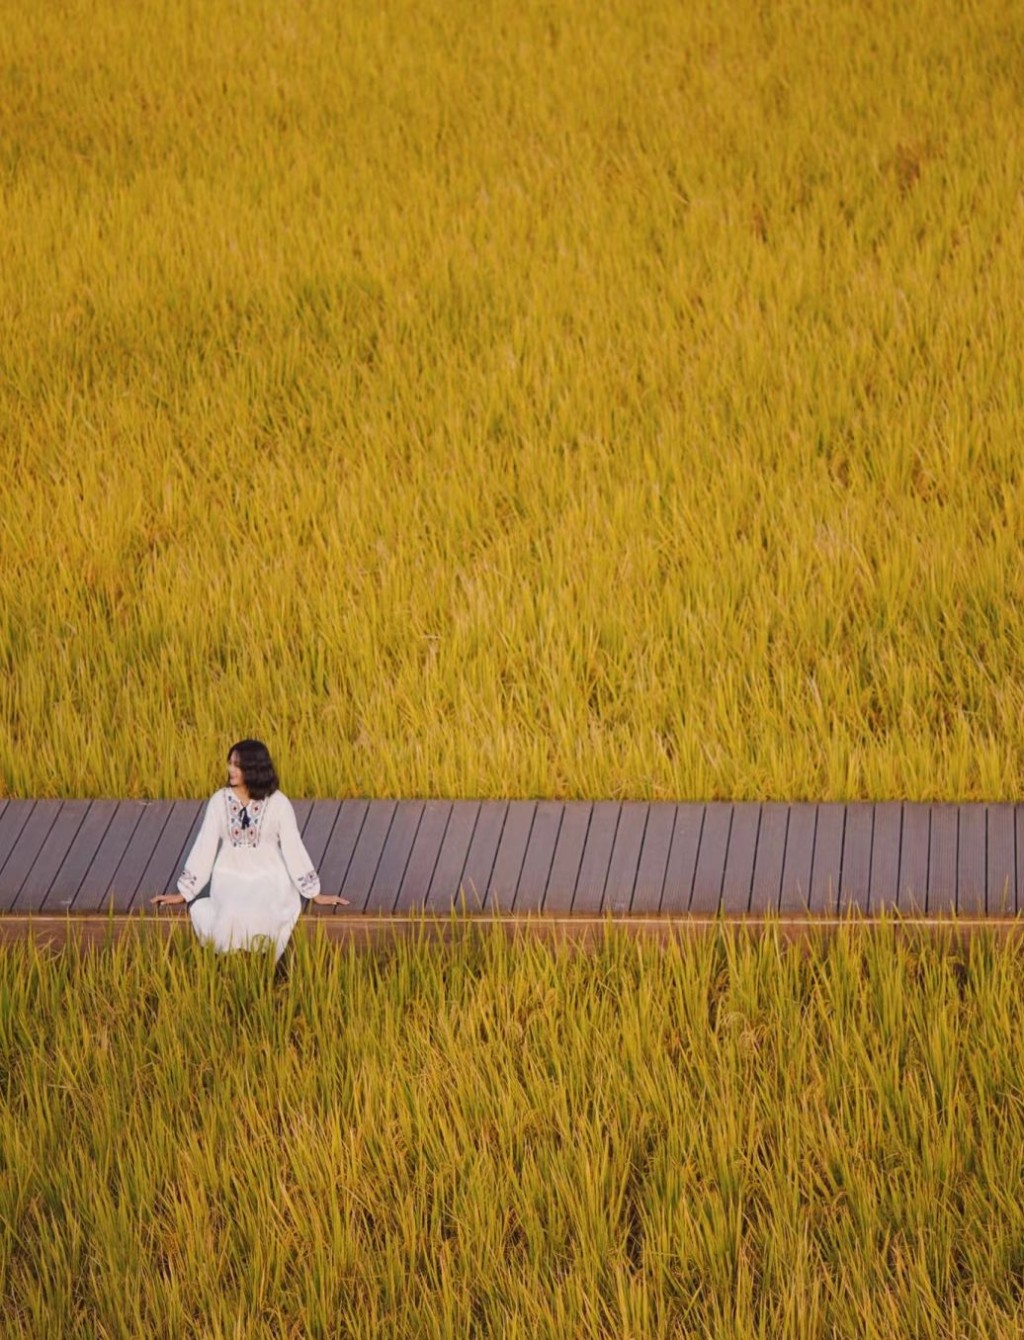 广州艾米稻香小镇每到秋季稻田一片金黄。(图片来源：Fang小途)